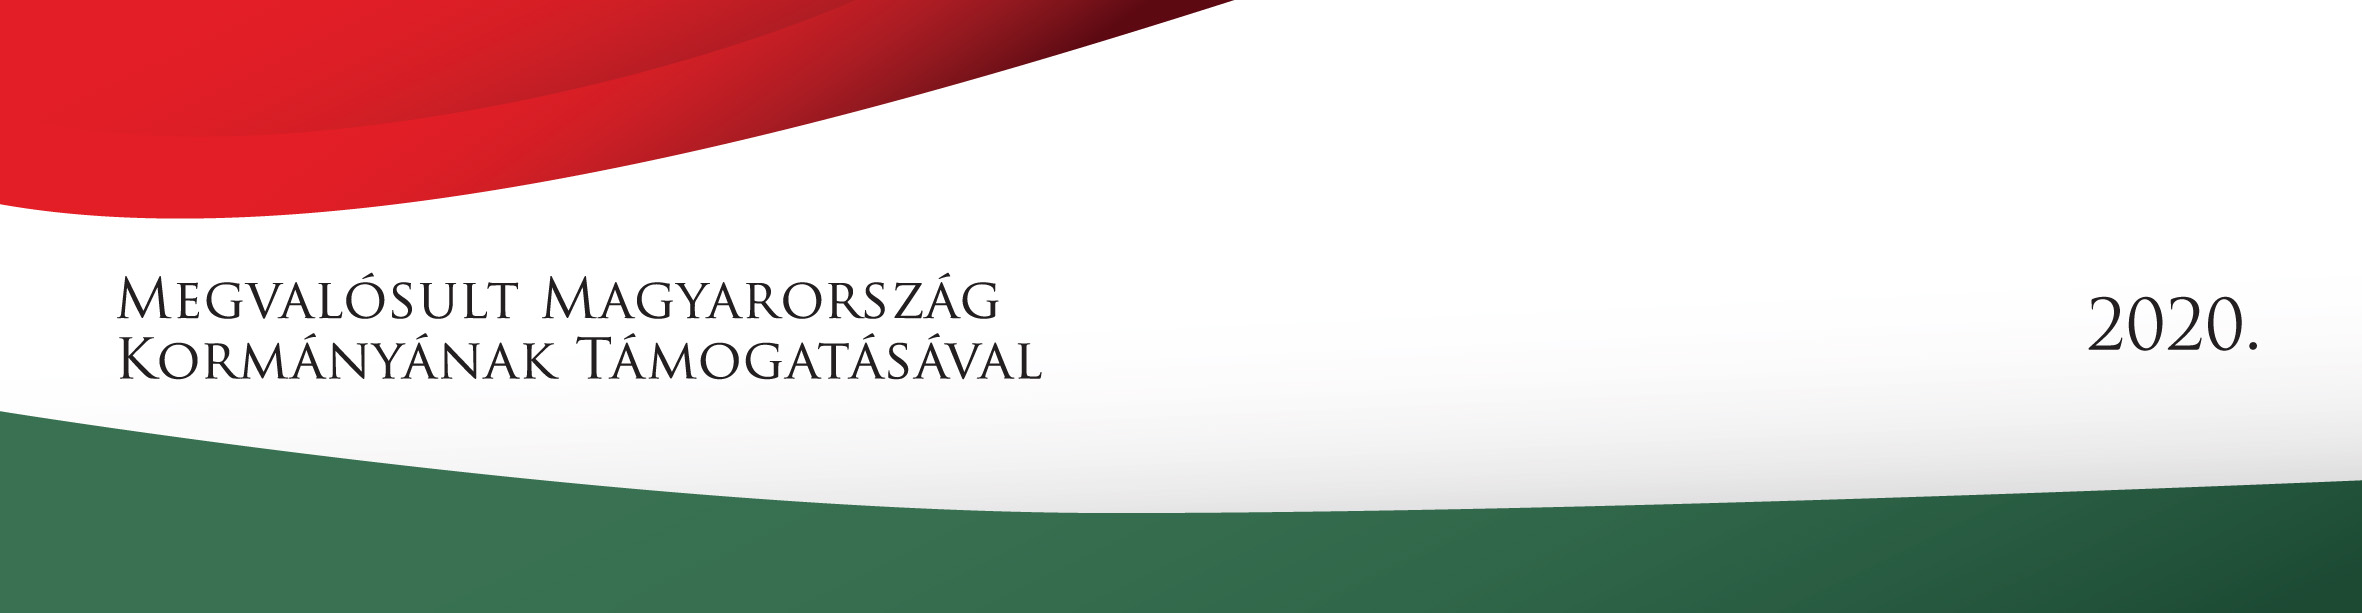 Megvalósult Magyarország Kormányának Támogatásával 2020 logó